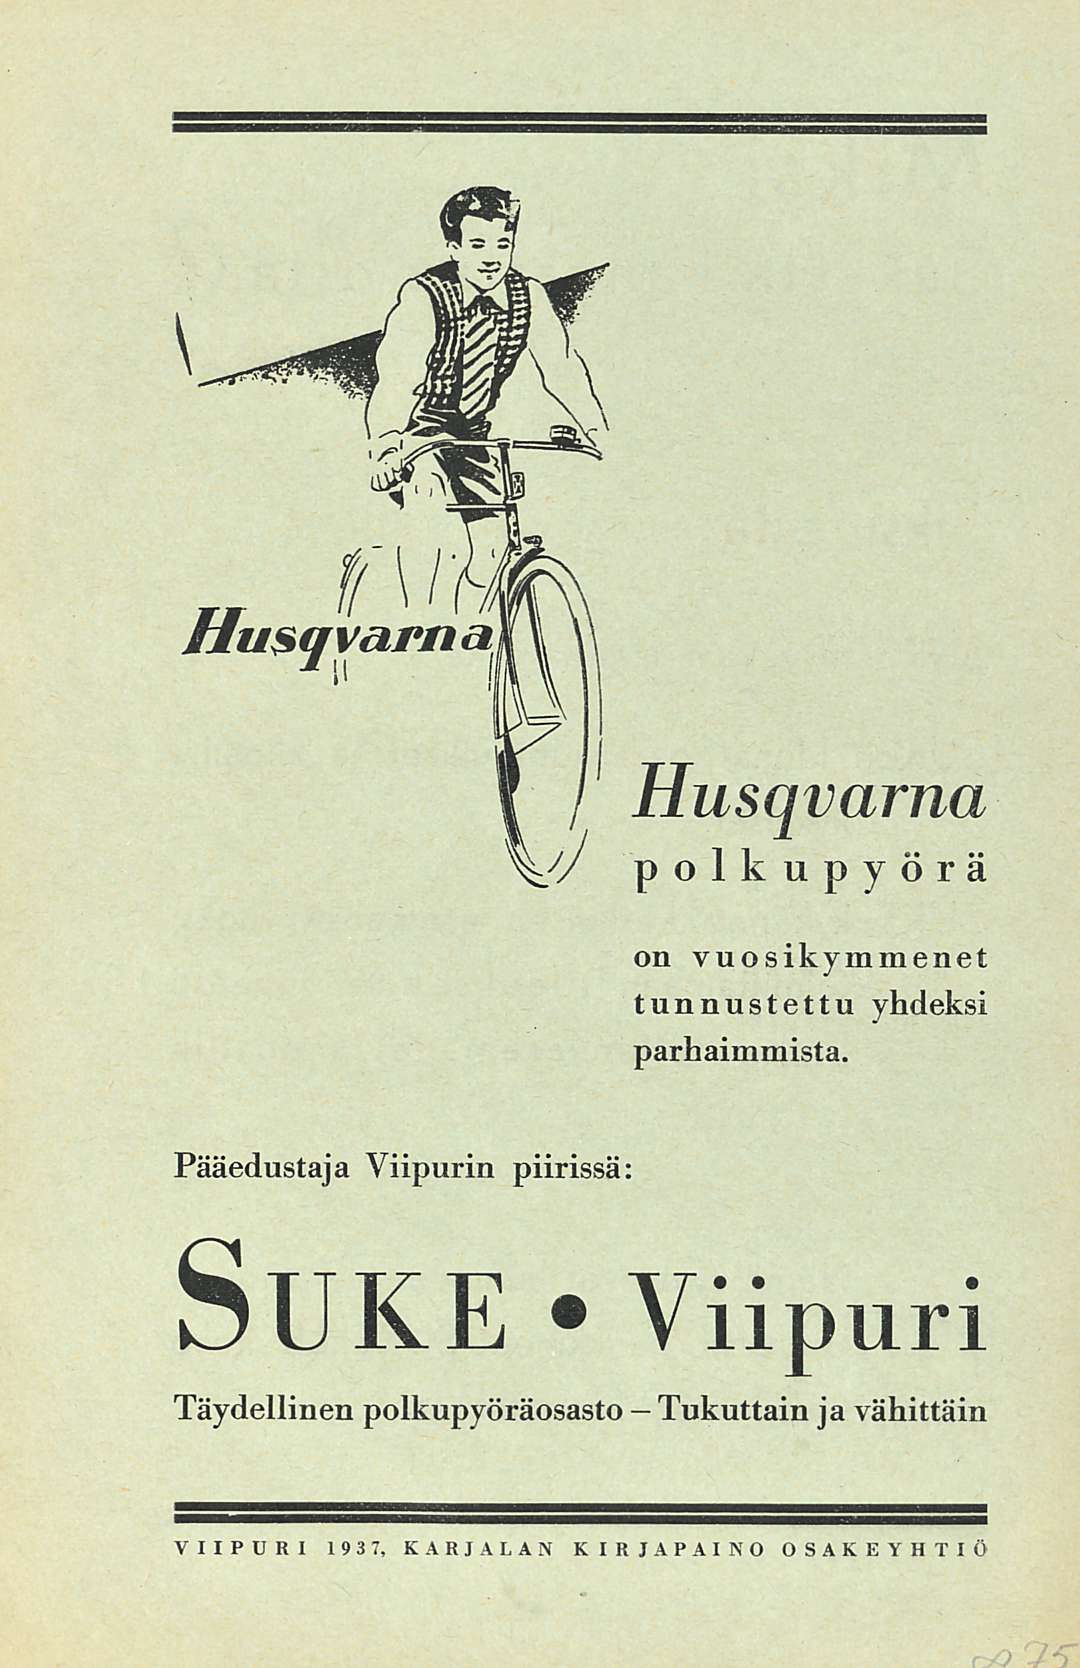 Husqvarna polkupyörä on vuosikymmenet tunnustettu yhdeksi parhaimmista.